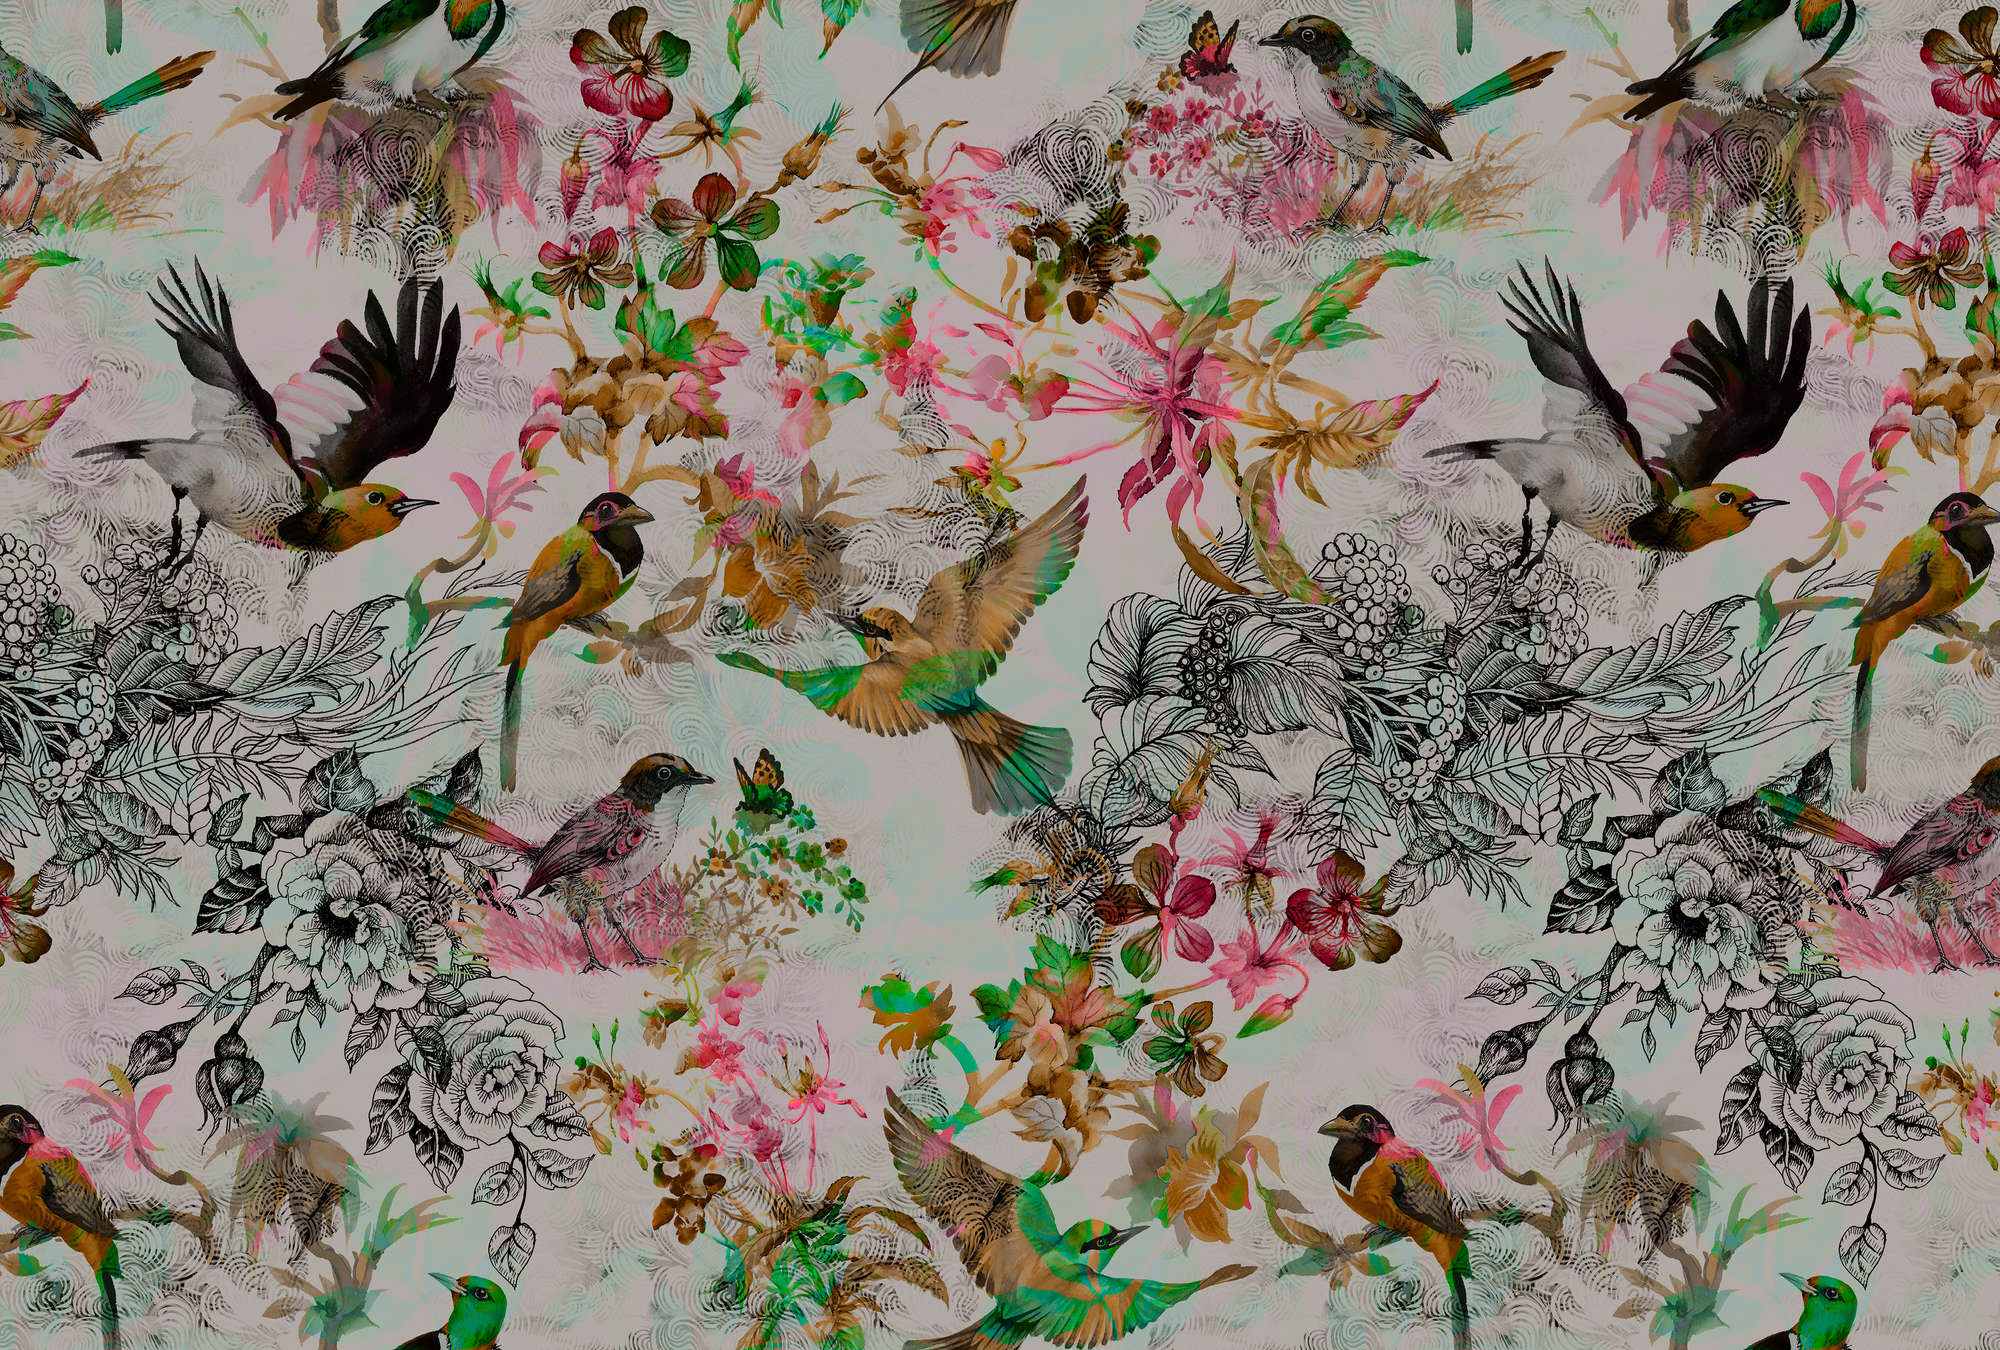             Birds & Flowers Collage Behang - Grijs, Roze
        